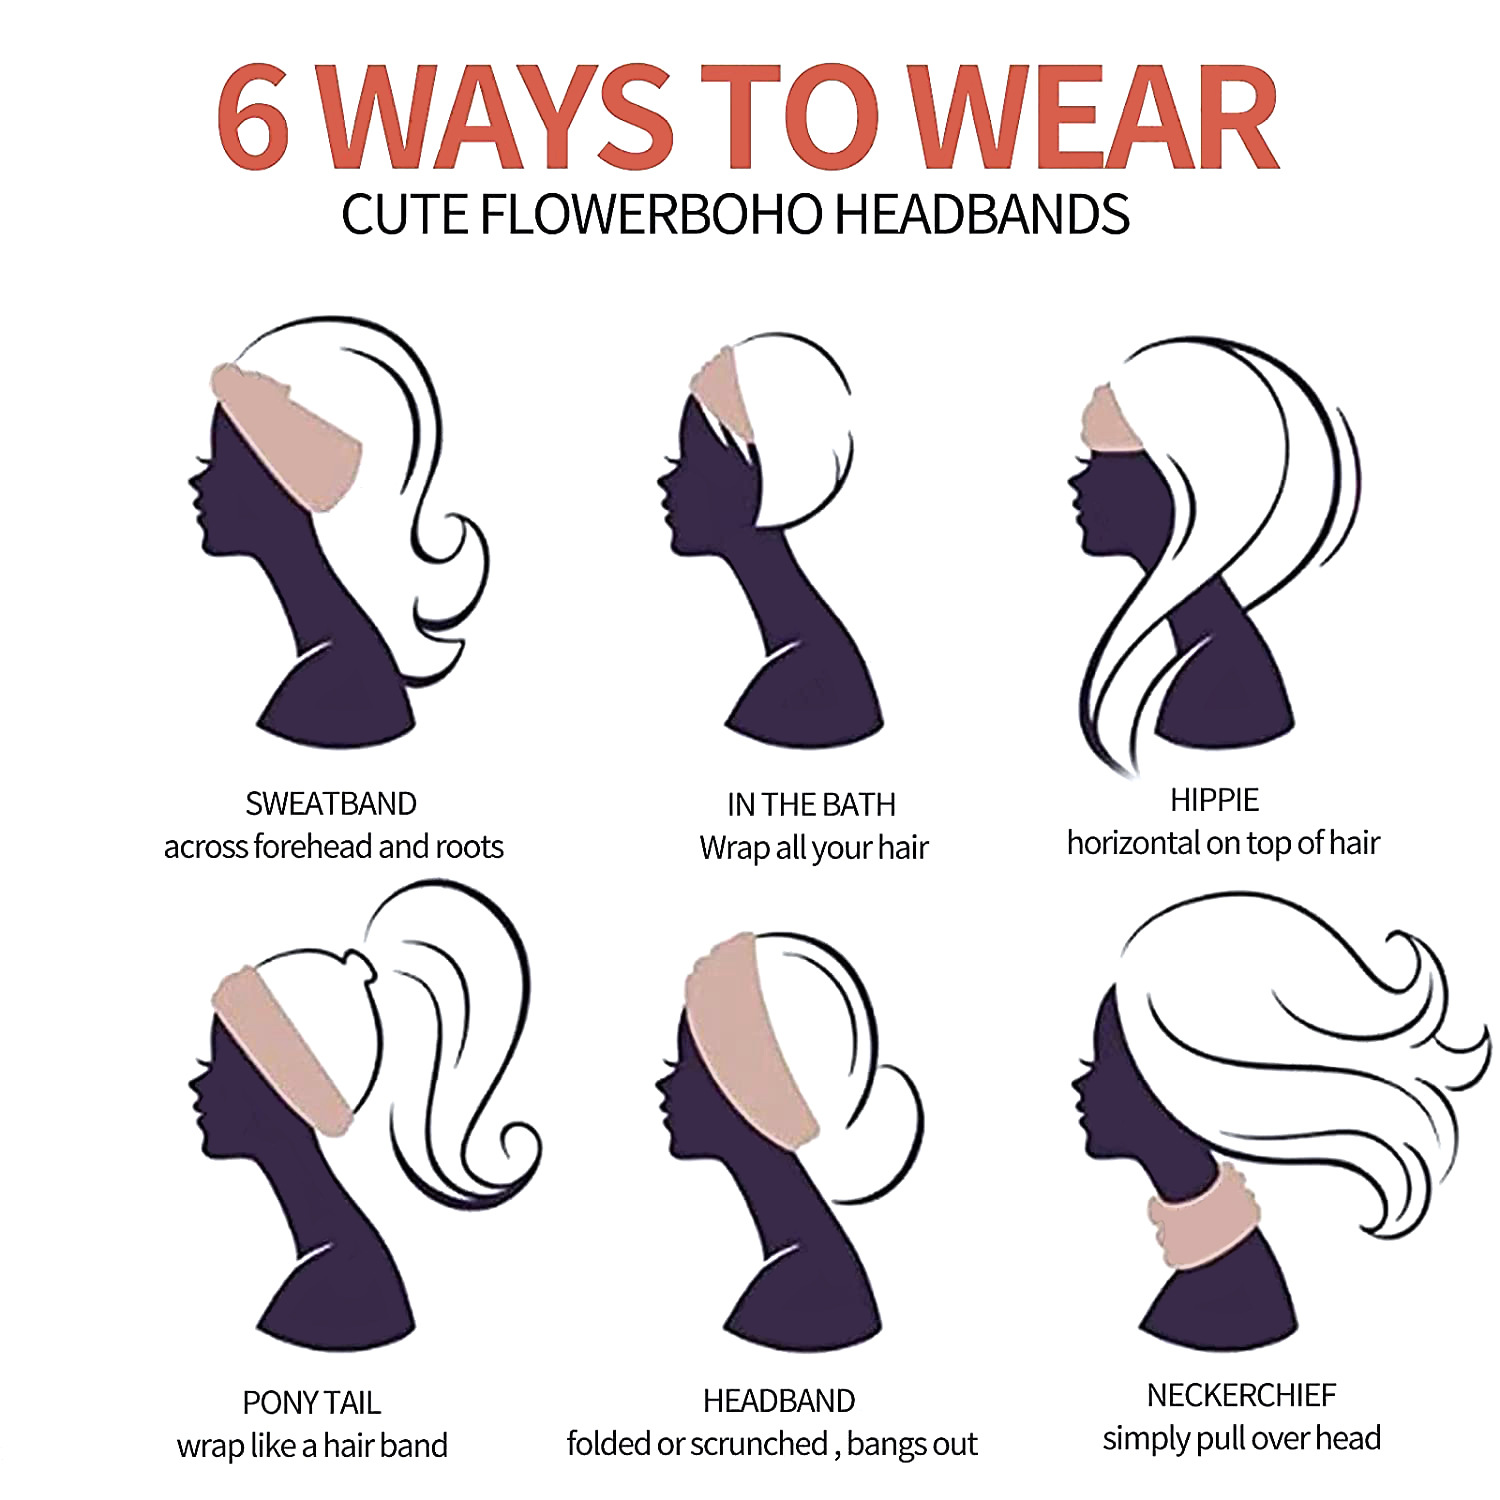 4 Great Ways to Wear an Elastic Headband